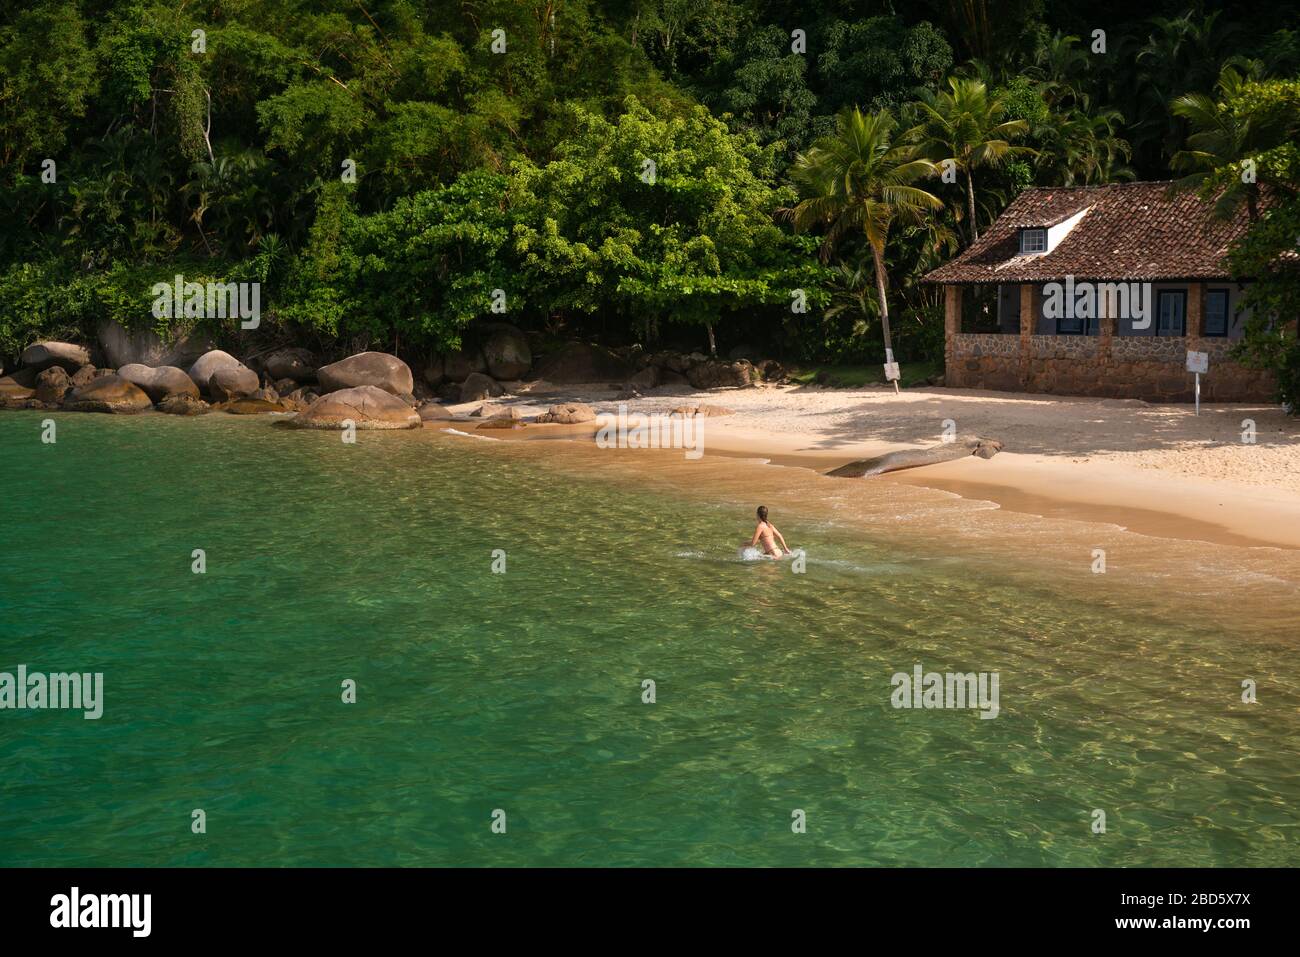 A calm beach near Paraty, Rio de Janeiro, Brazil Stock Photo